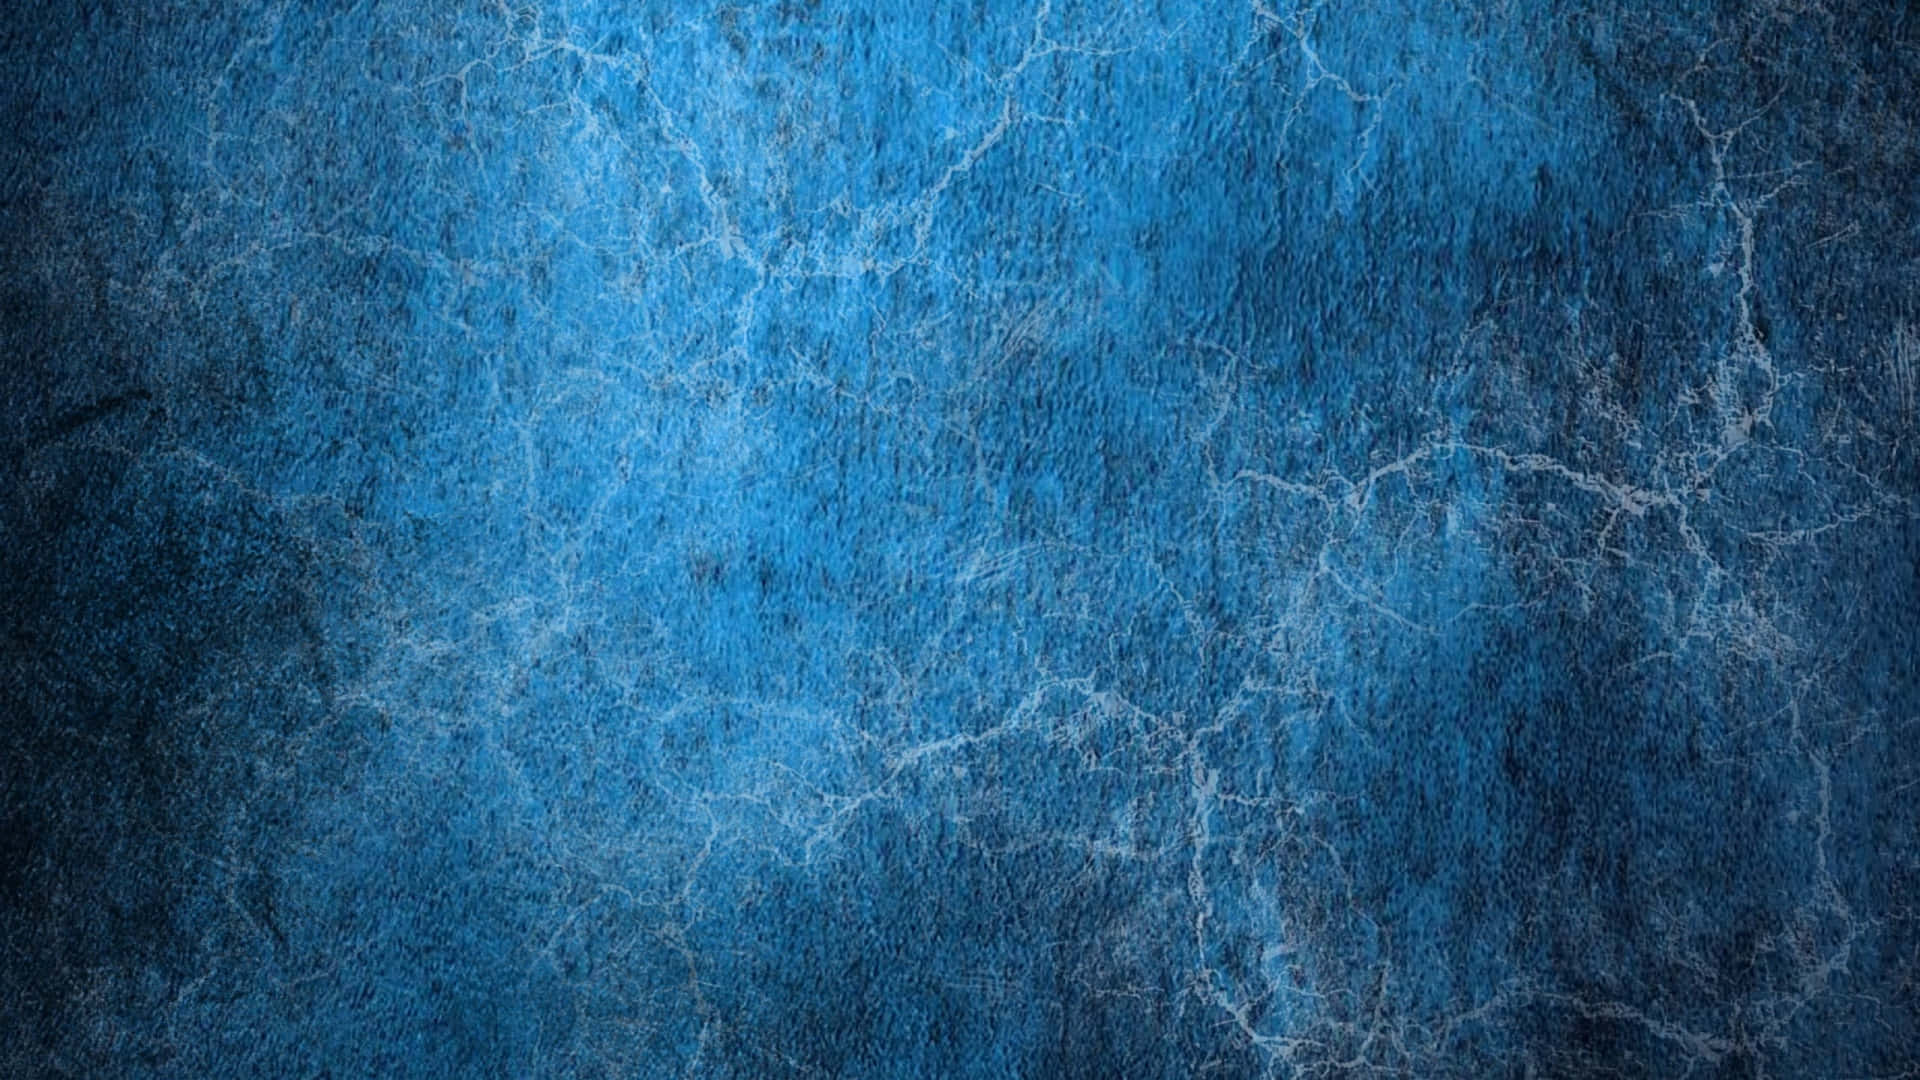 A Close-Up of Blue Grunge Textures Wallpaper